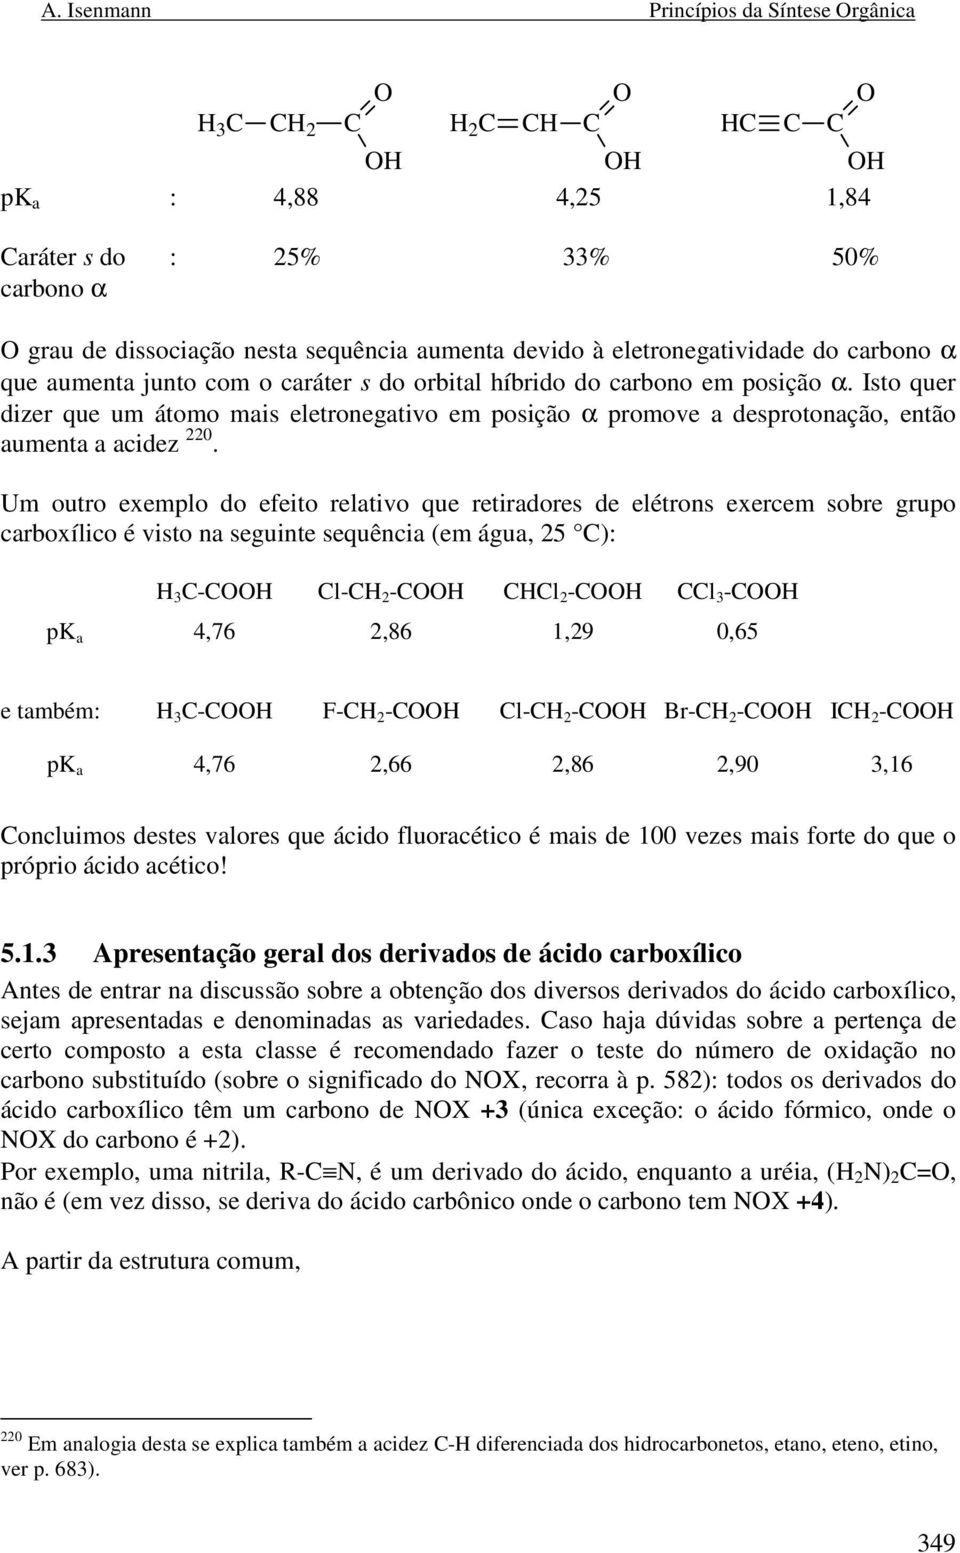 Um outro exemplo do efeito relativo que retiradores de elétrons exercem sobre grupo carboxílico é visto na seguinte sequência (em água, 25 ): 3 - l- 2 - l 2 - l 3 - pk a 4,76 2,86 1,29 0,65 e também: